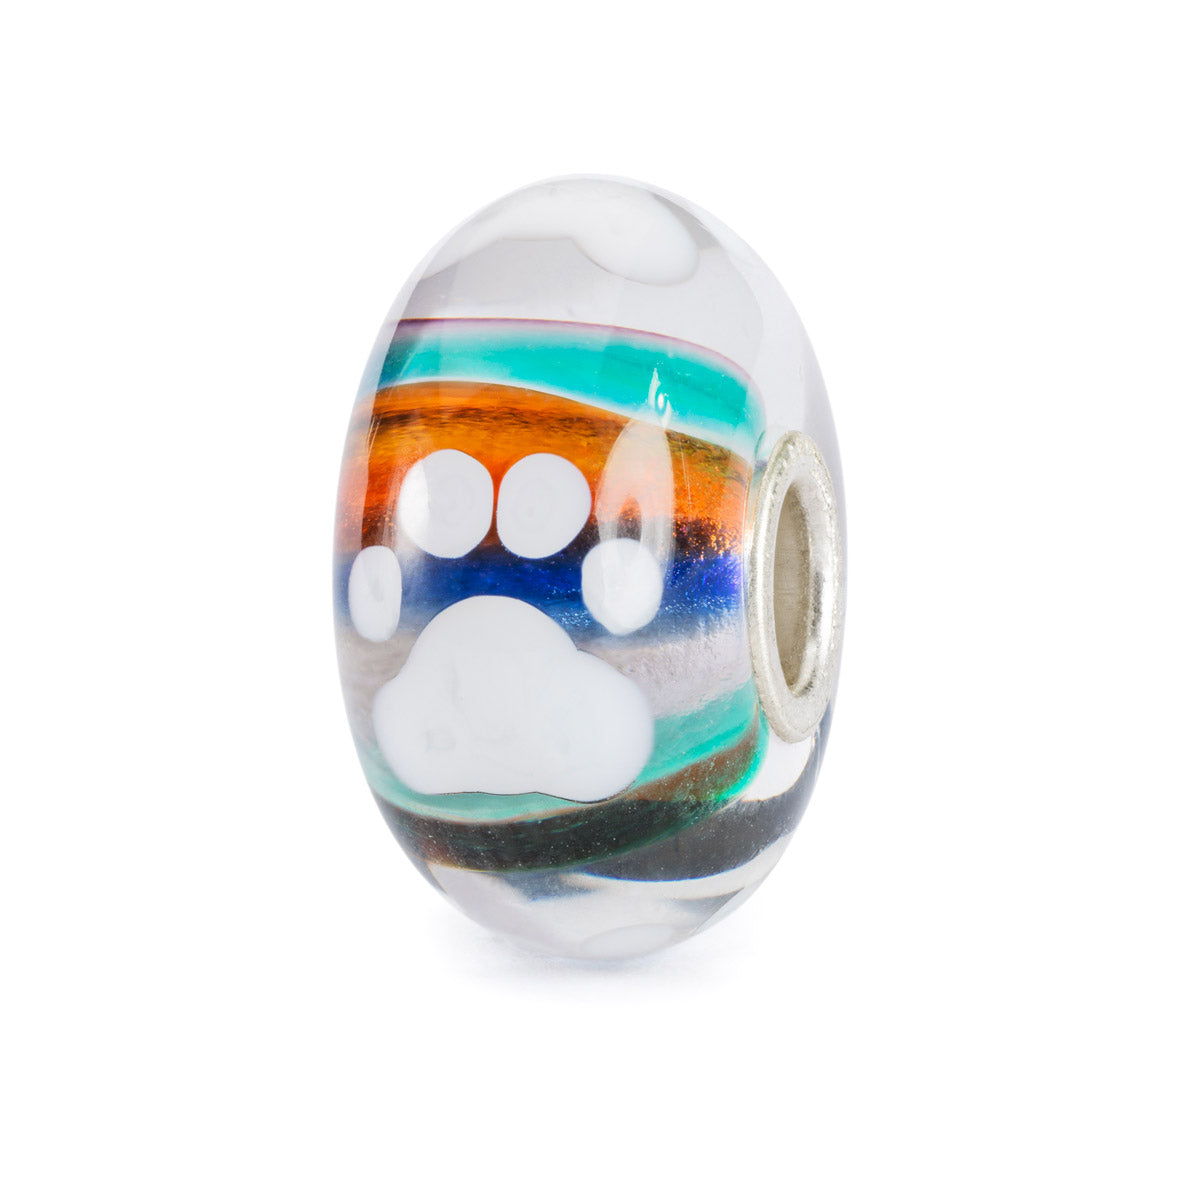 Compagno per la Vita Trollbeads | Beads in vetro con zampa di cane bianca e strisce orizzontali multicolor. | TGLBE-20387